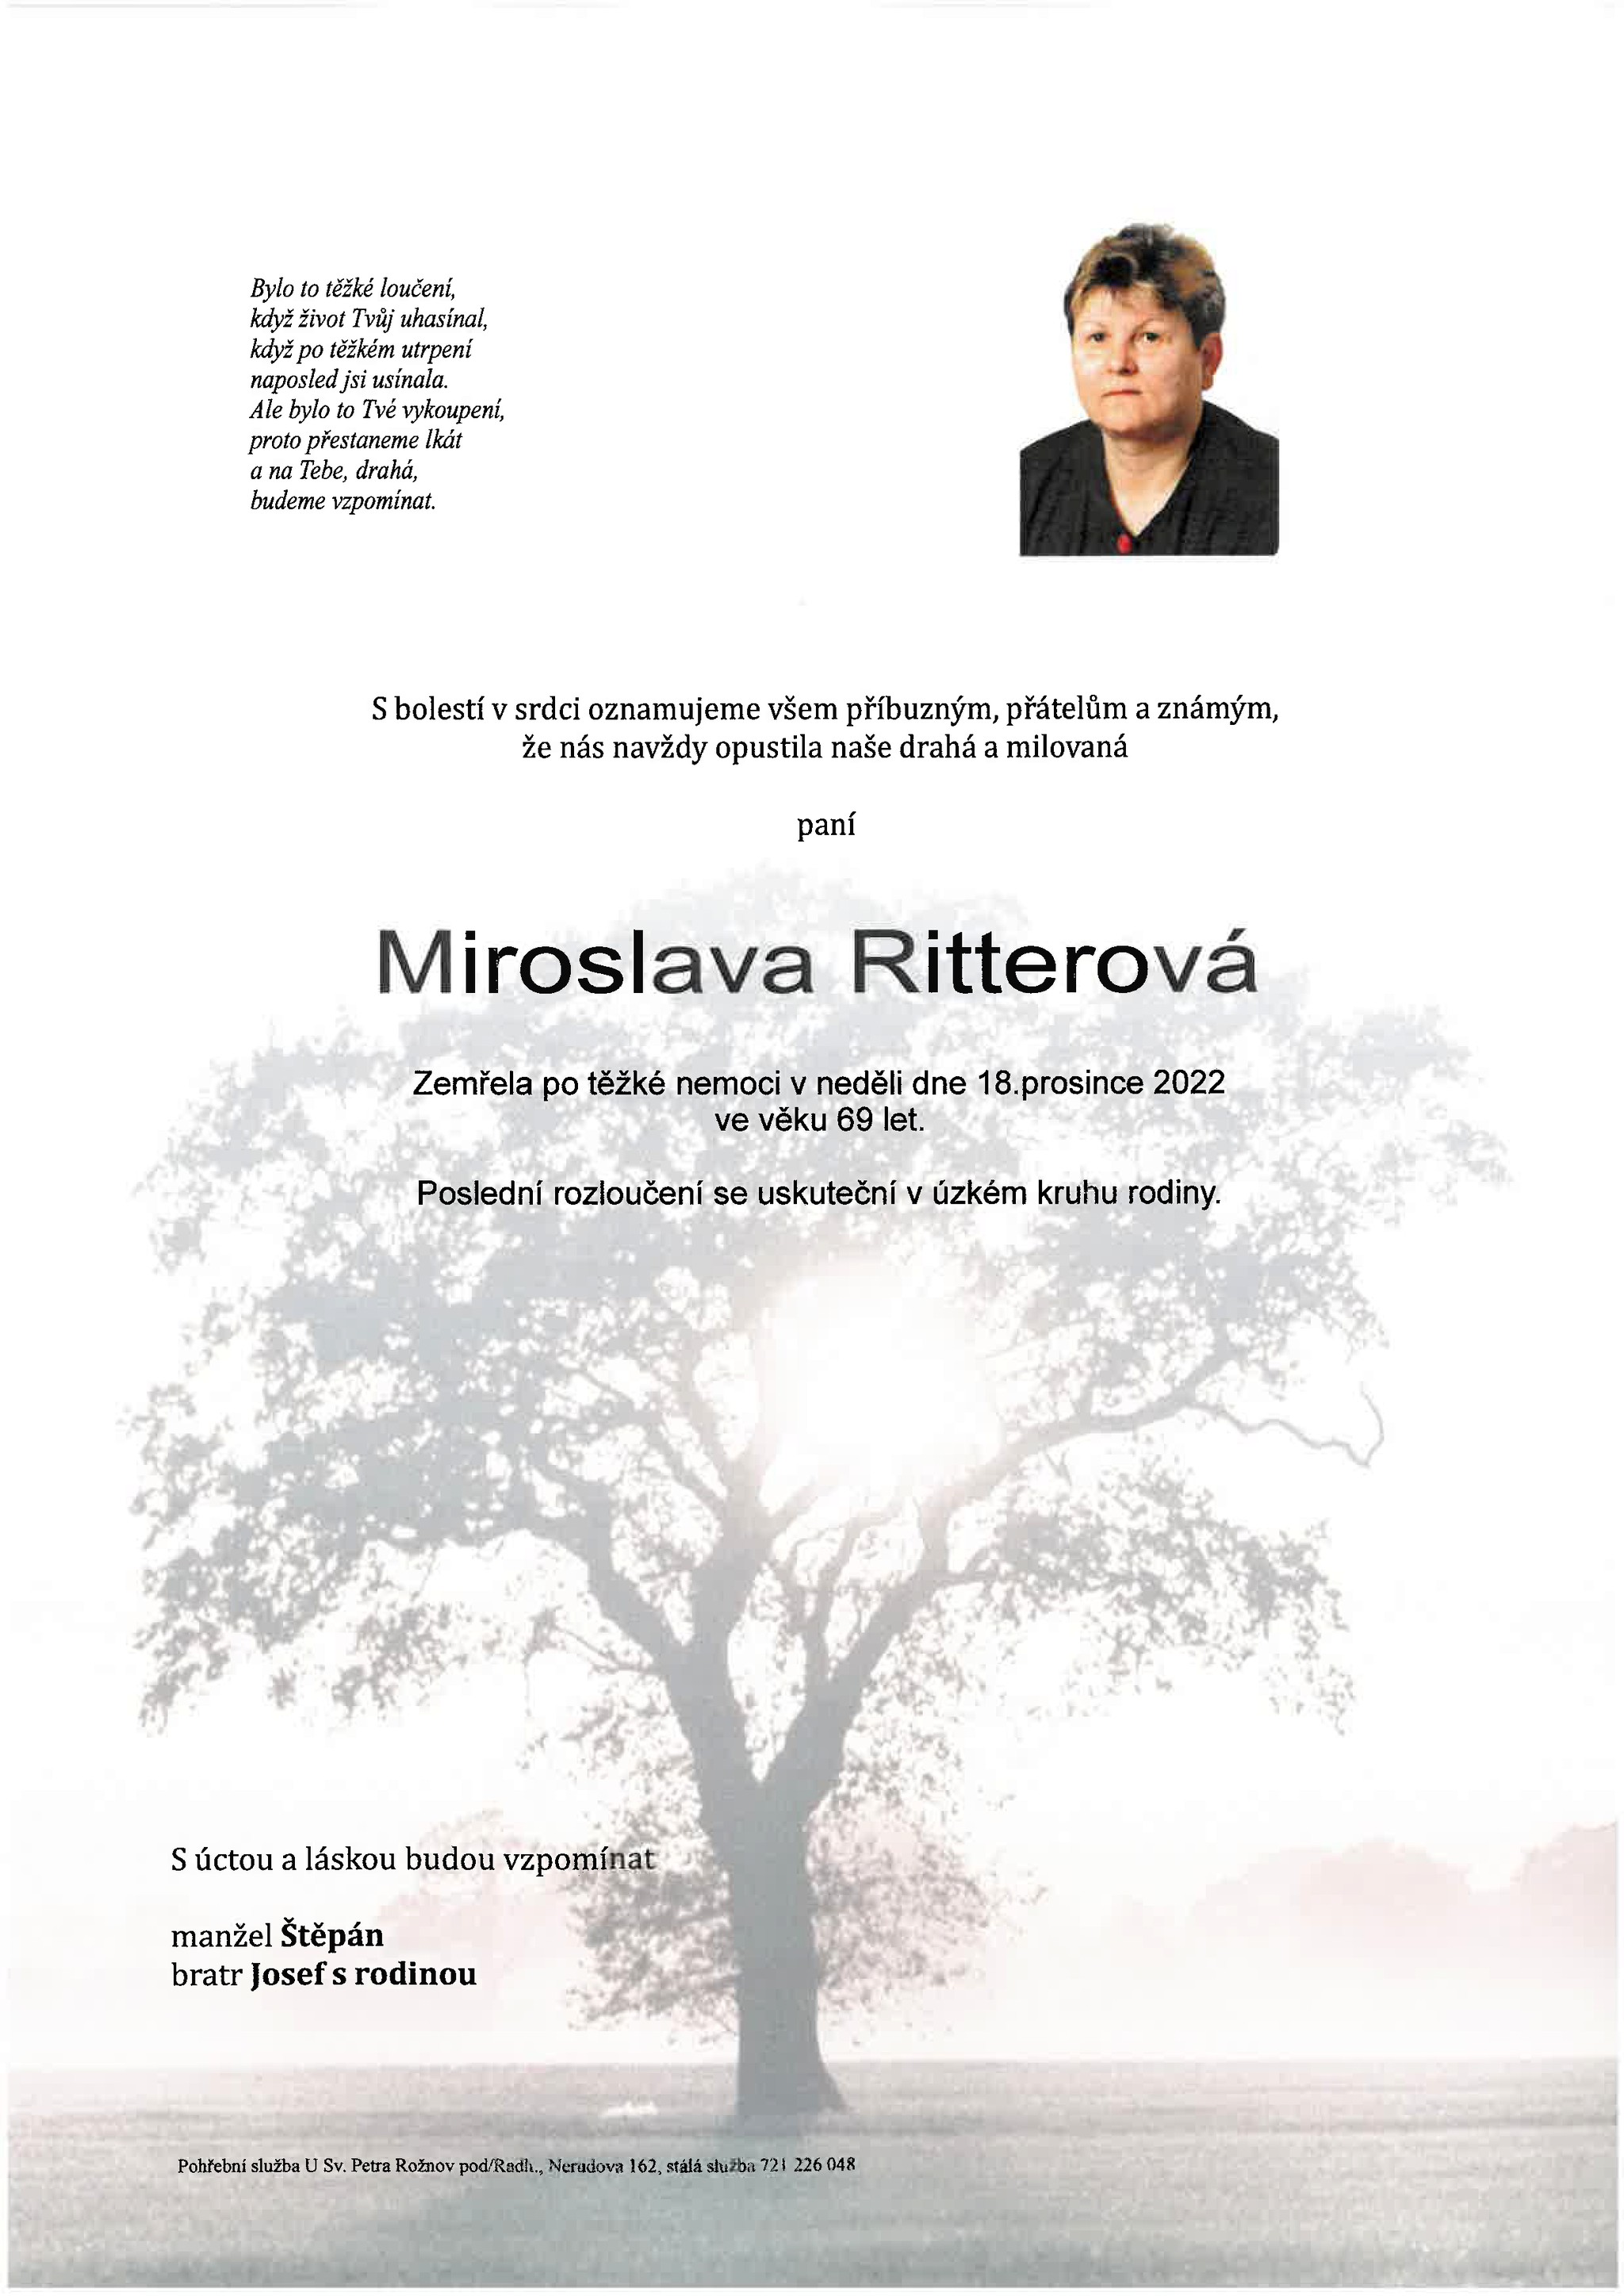 Miroslava Ritterová